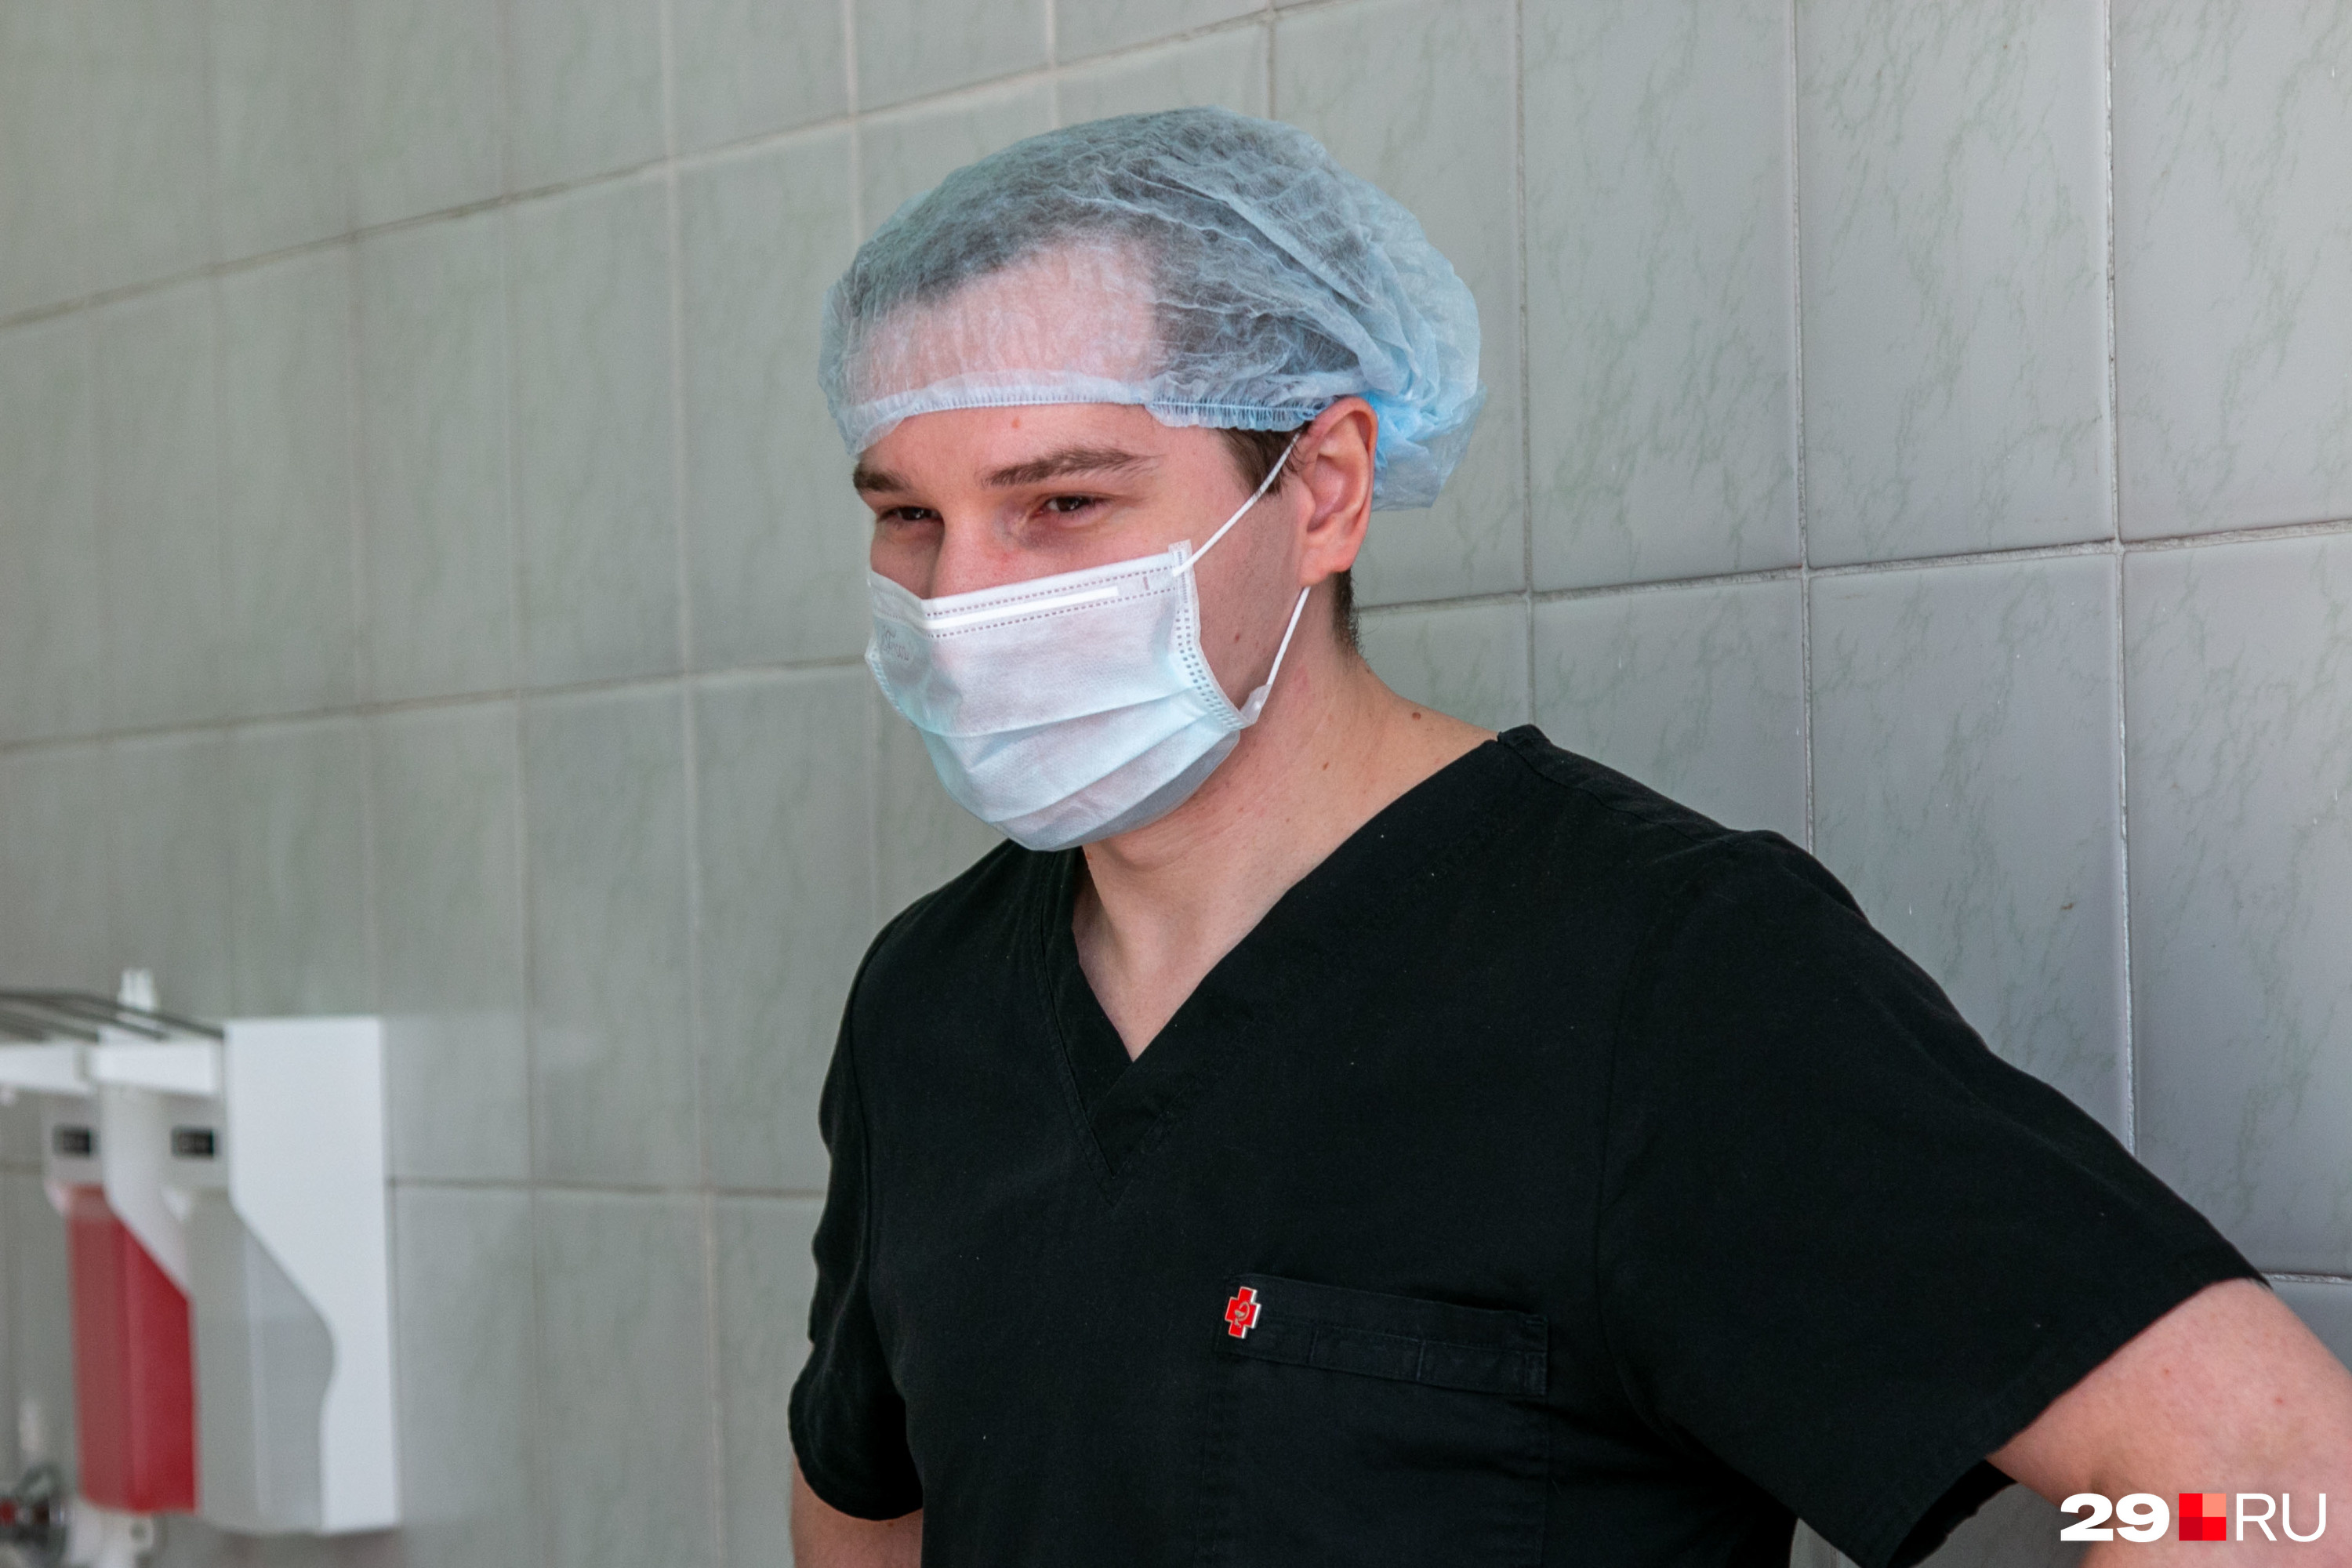 Андрей Совершаев — сосудистый хирург, заведующий Центром сердечно-сосудистой хирургии Архангельской областной больницы